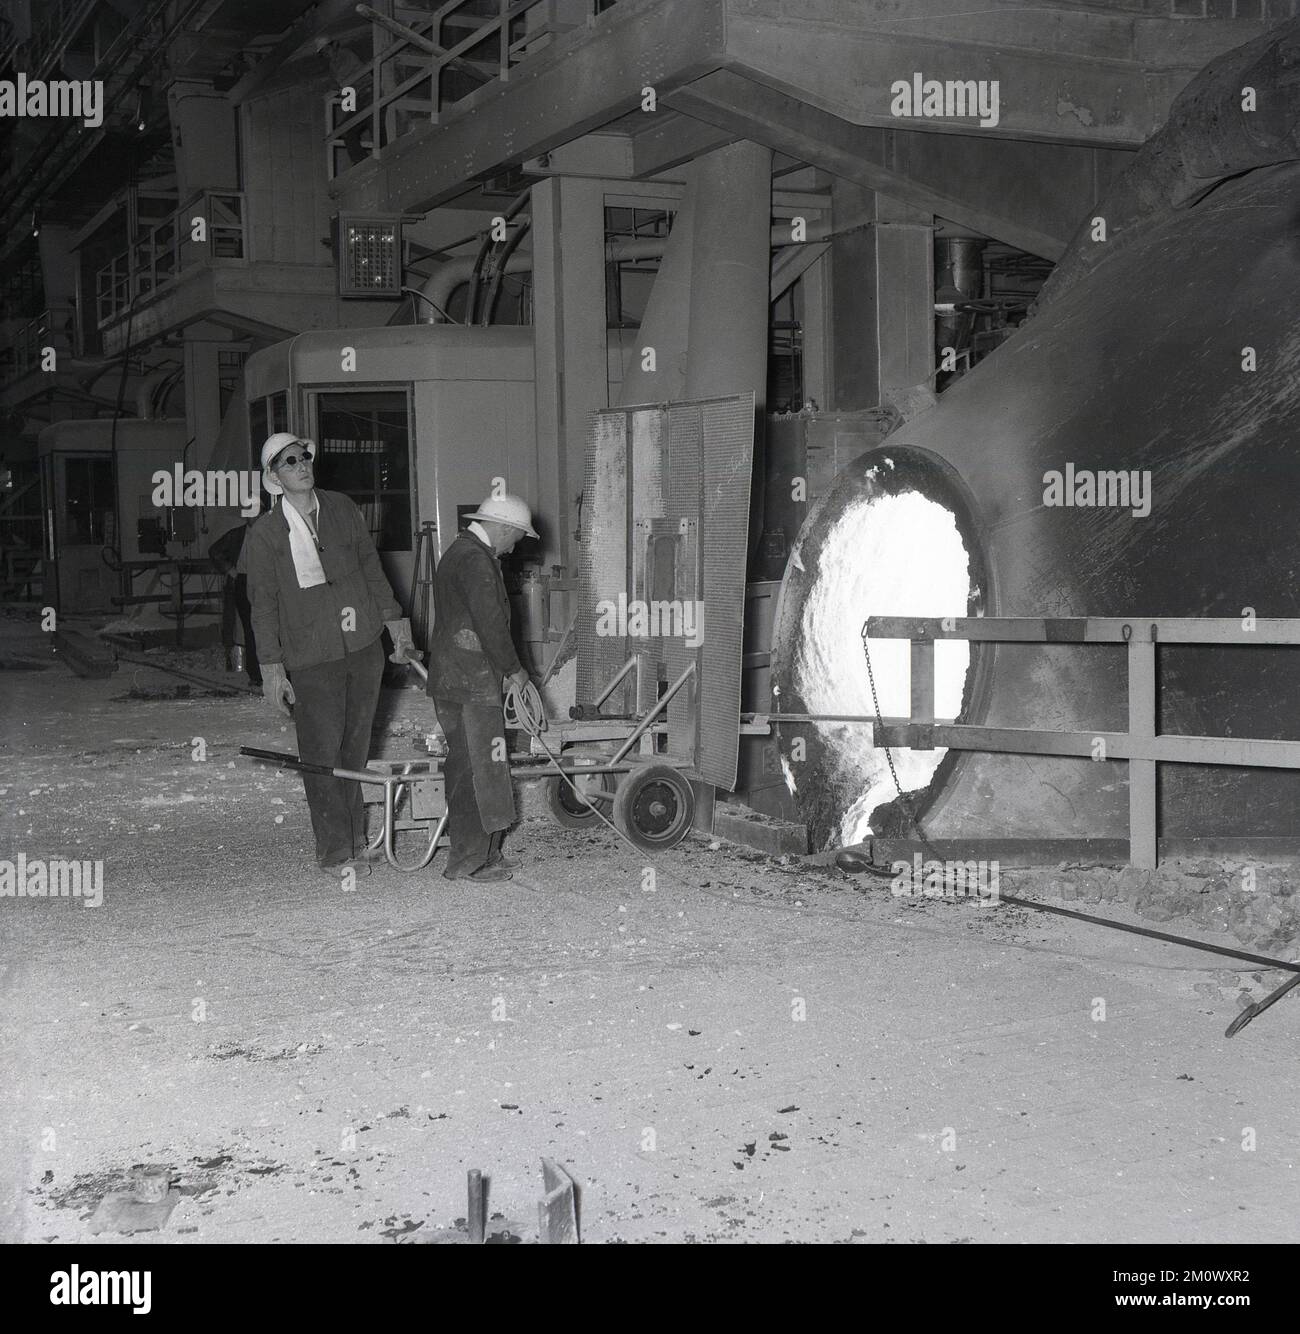 1950s, historique, aciéries, deux aciéries dans un four, debout derrière une garde de protection, l'une tenant une barre d'acier dans le four, Abbey Works, Port Talbot, pays de Galles du Sud, Royaume-Uni. Banque D'Images